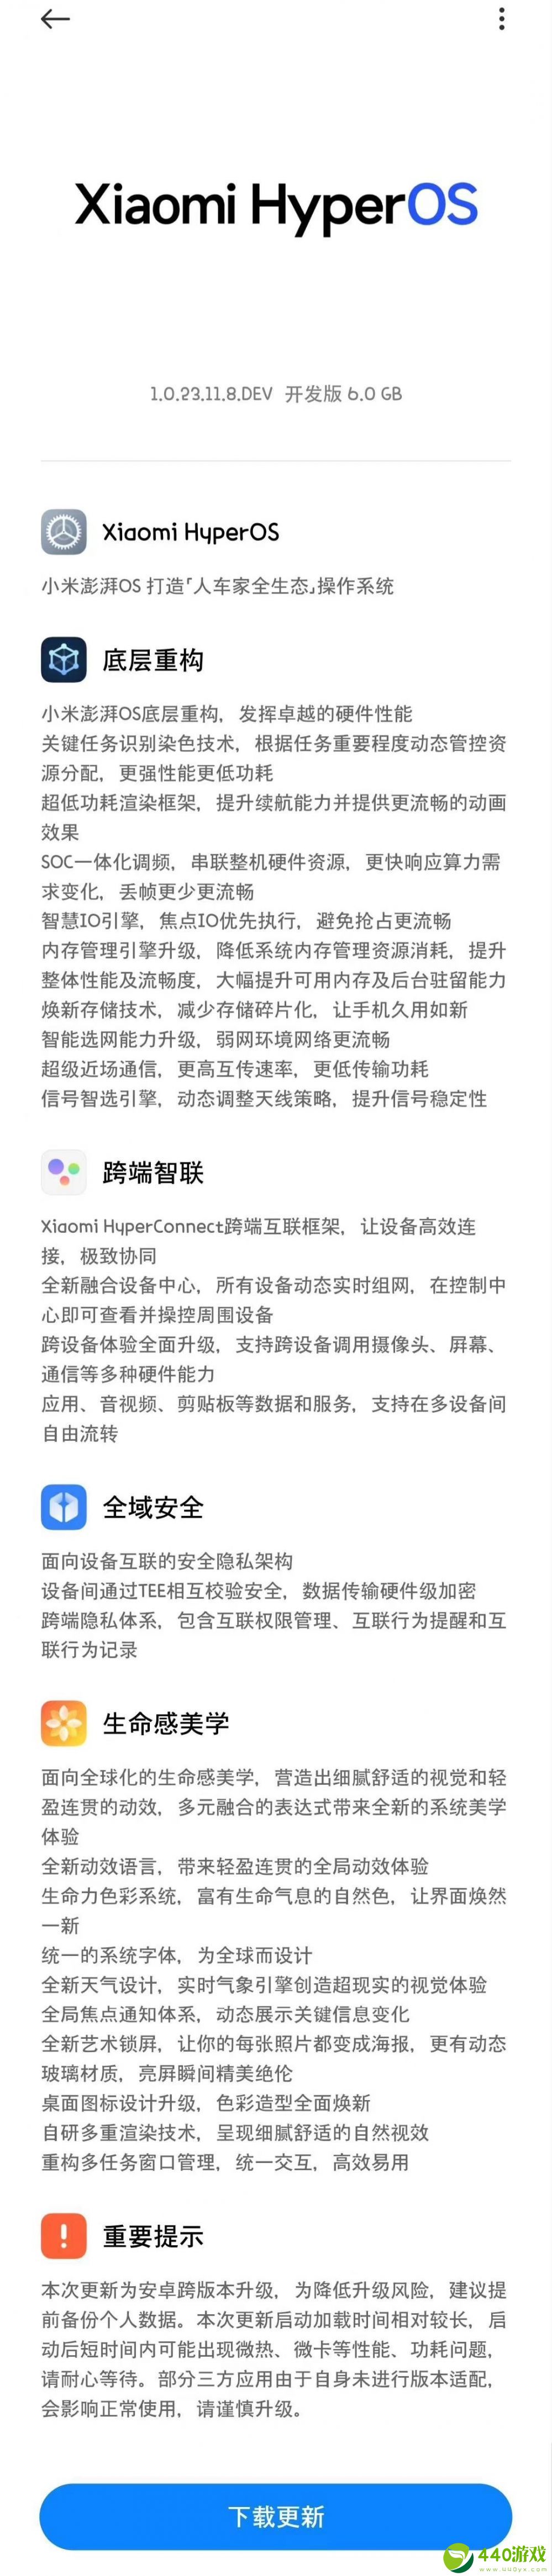 小米澎湃OS首个开发版更新日志公布